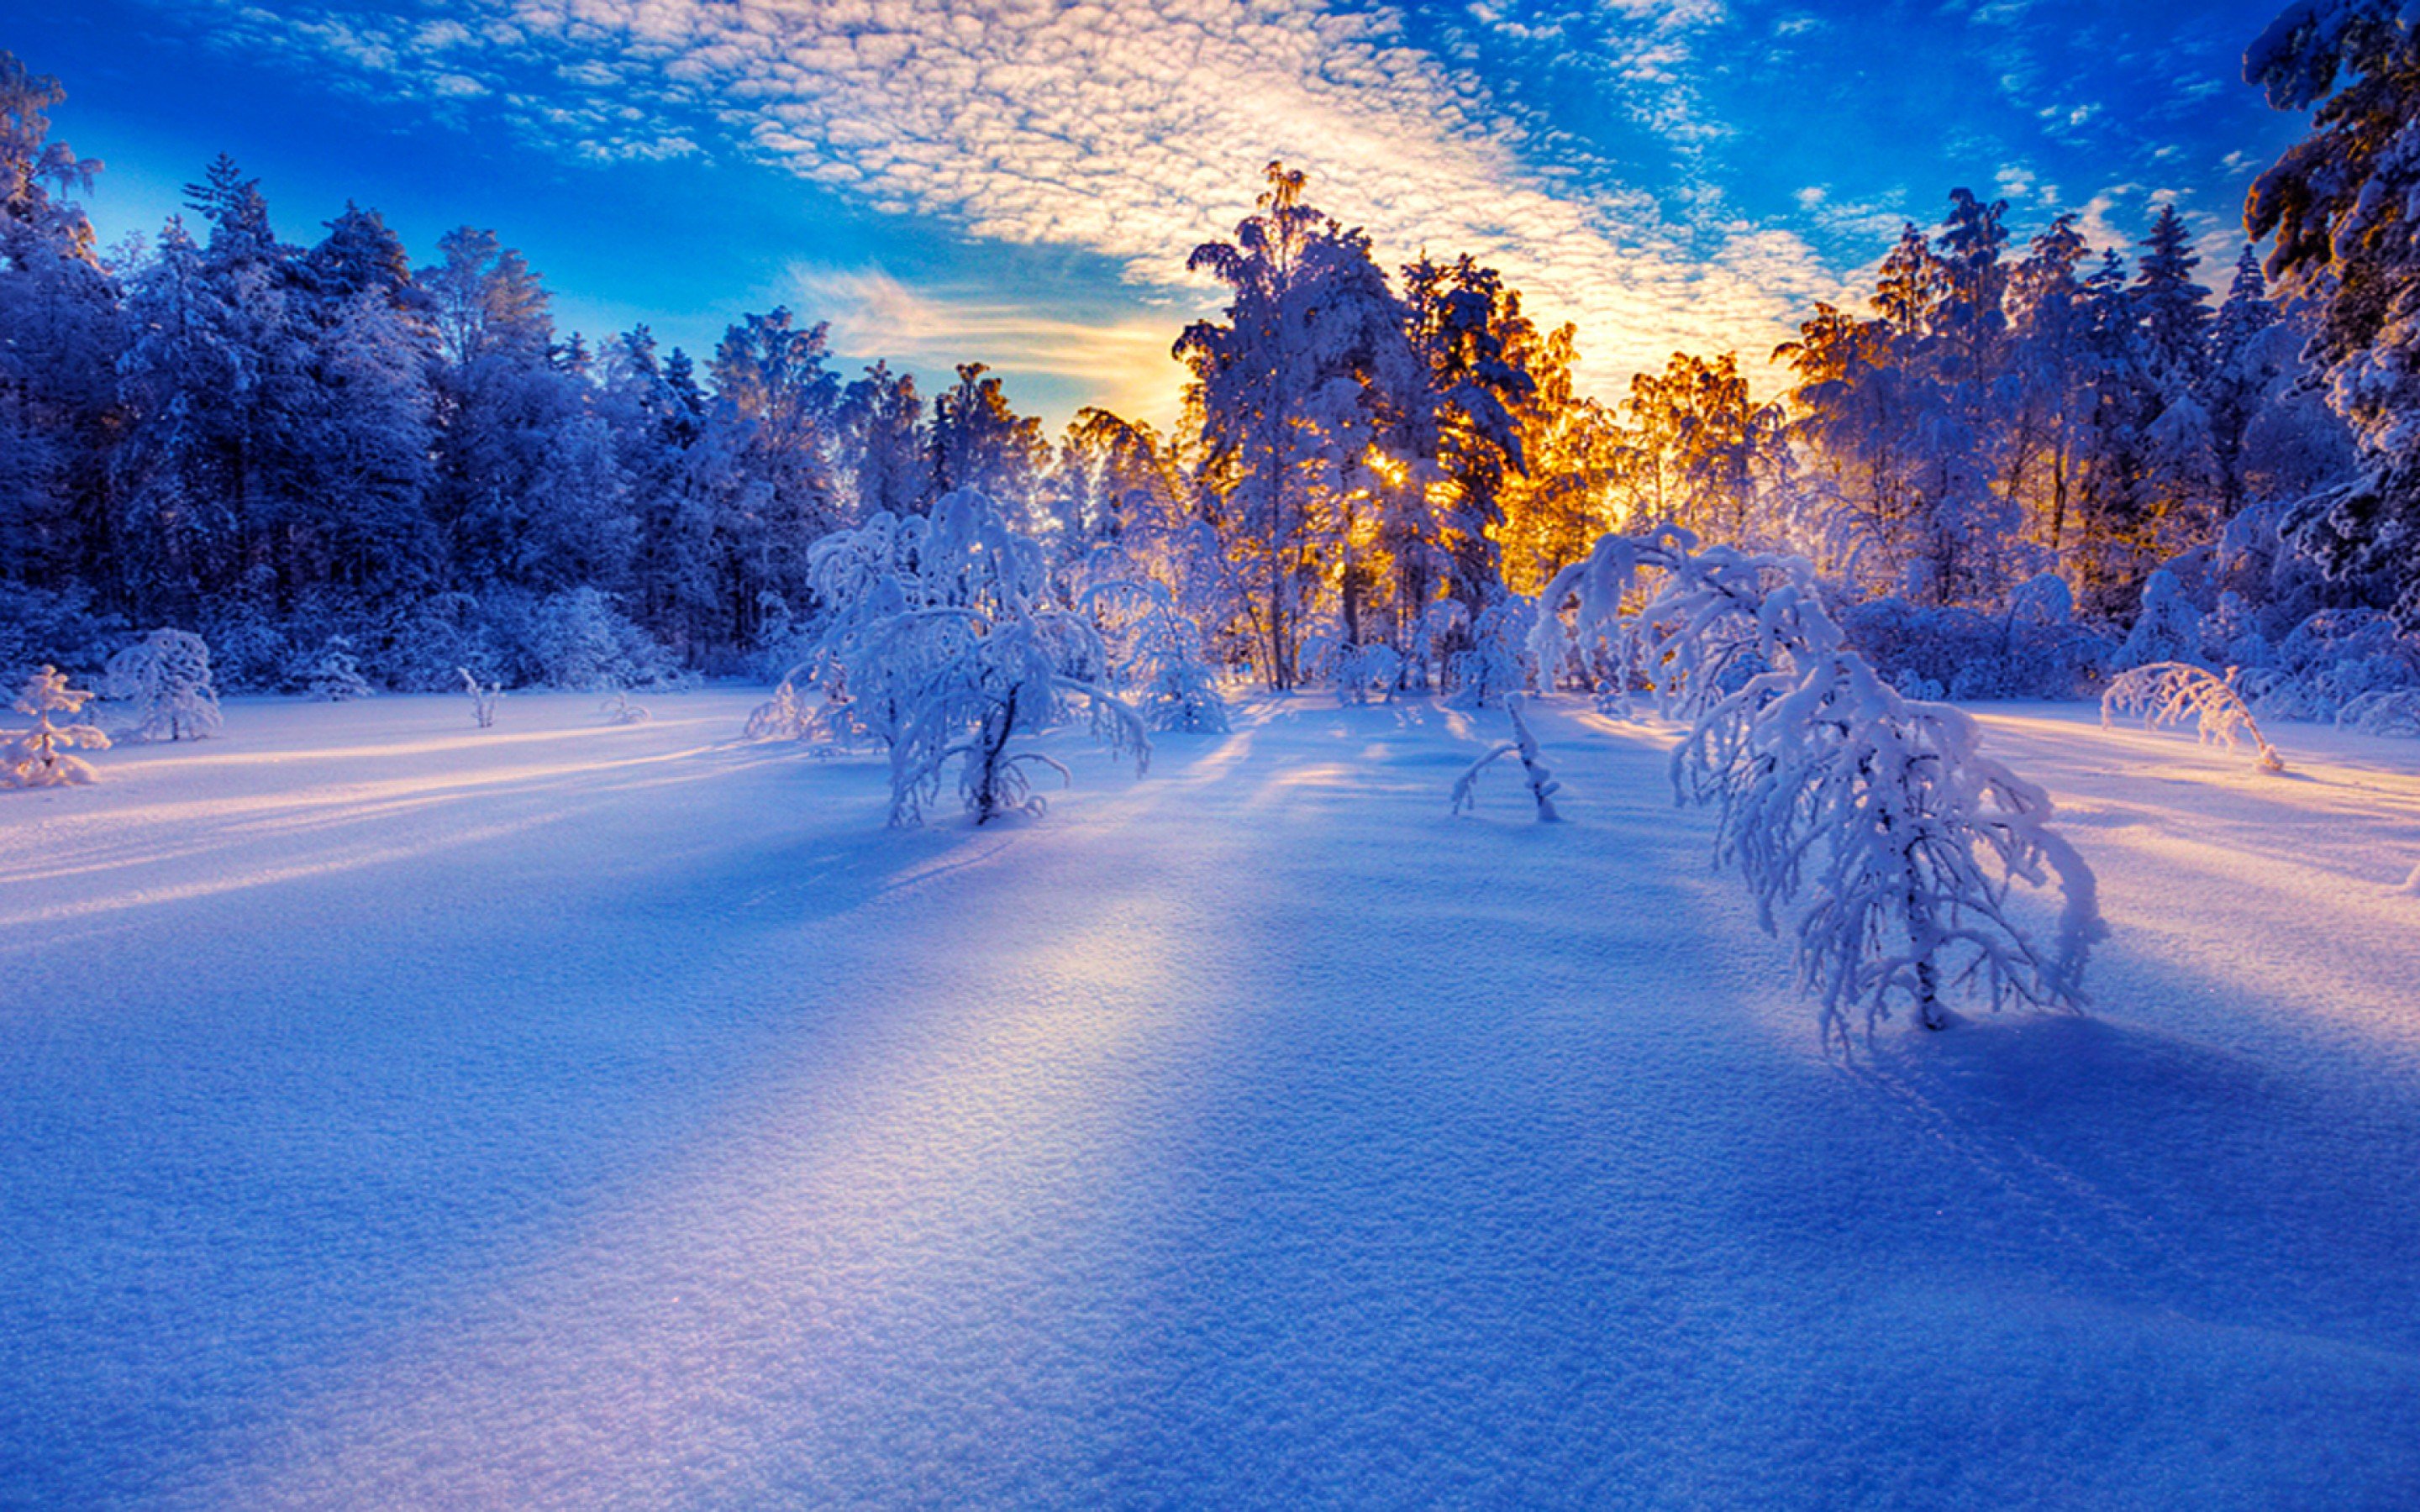 Картинка зимний период. Зимний пейзаж. Красивая зима. Снежный пейзаж. Красивая Снежная зима.